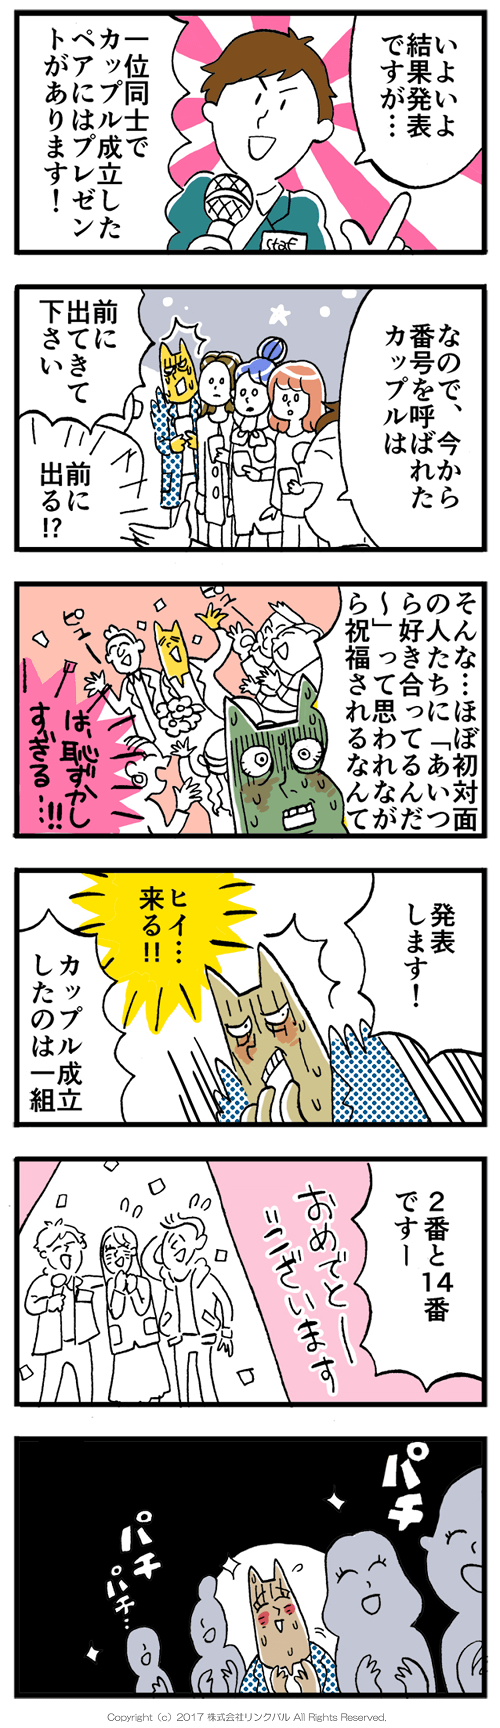 【婚活漫画】アラサー街コン物語・第19話「杞憂」